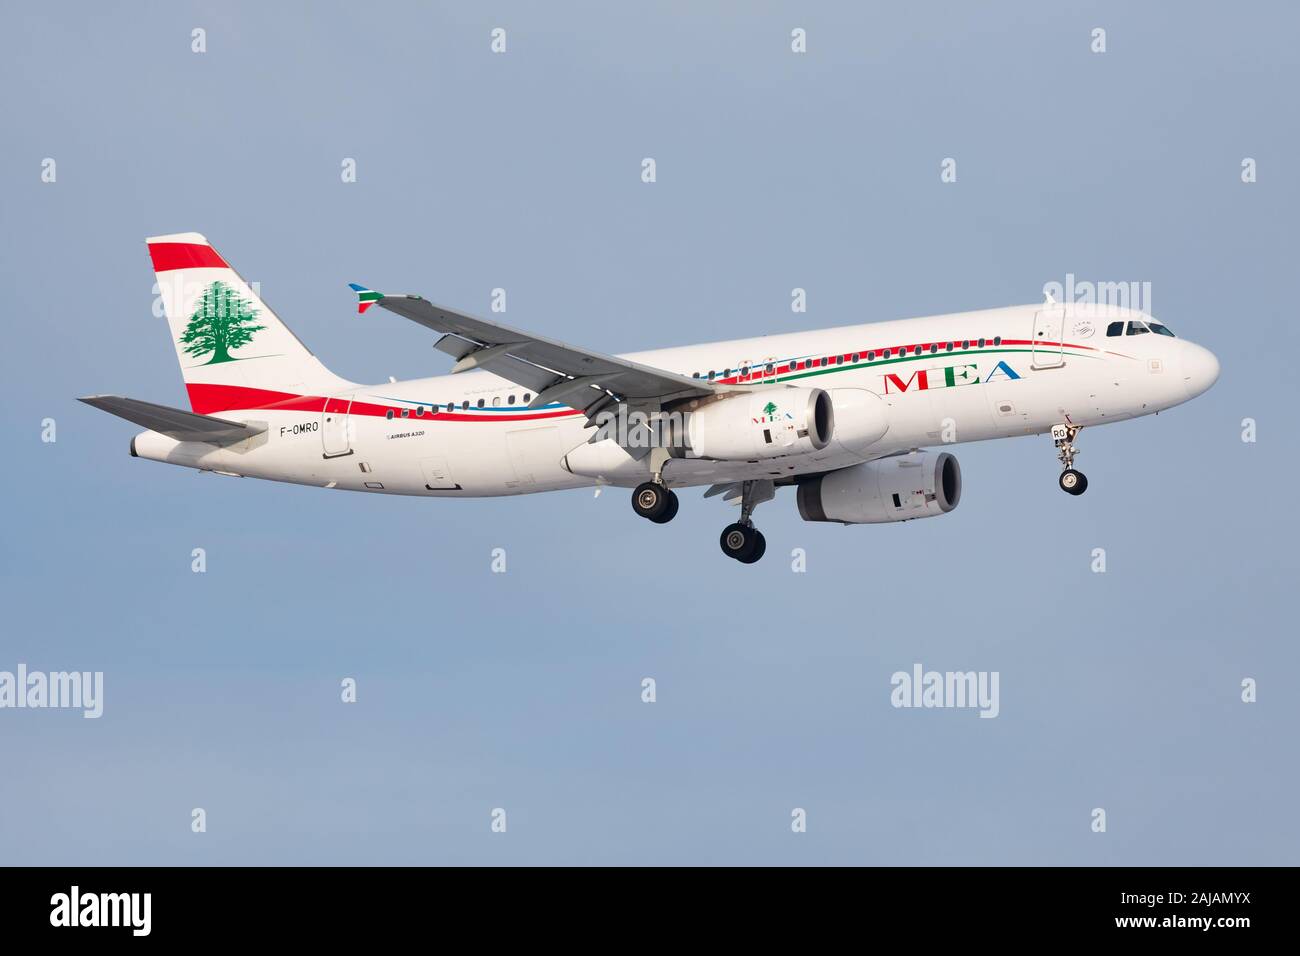 Middle East Airlines Stockfotos und -bilder Kaufen - Alamy